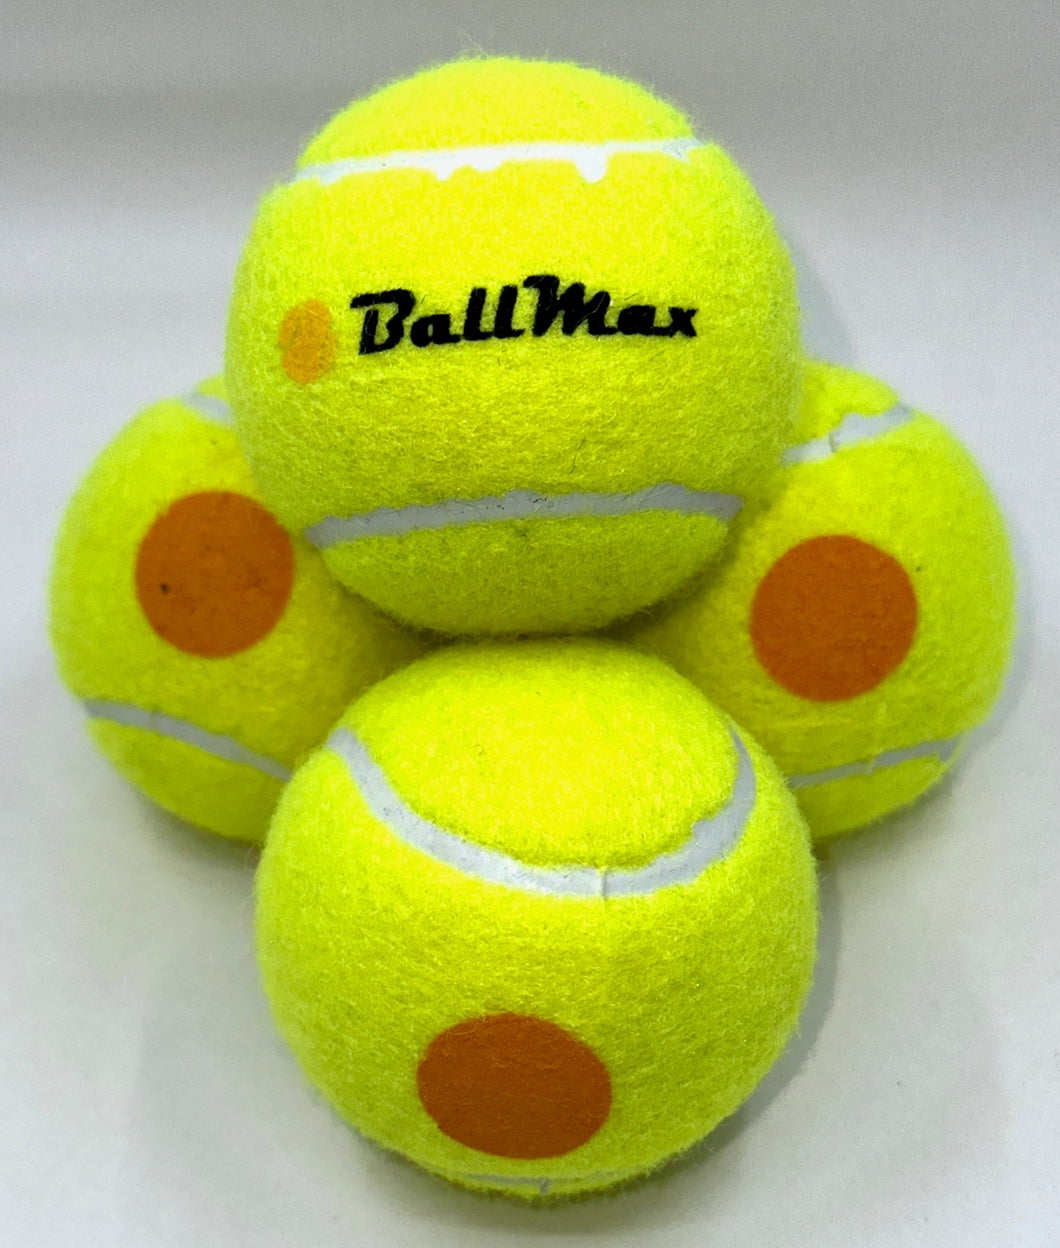 Tennisball orange/gelb - BallMax - Stage 2